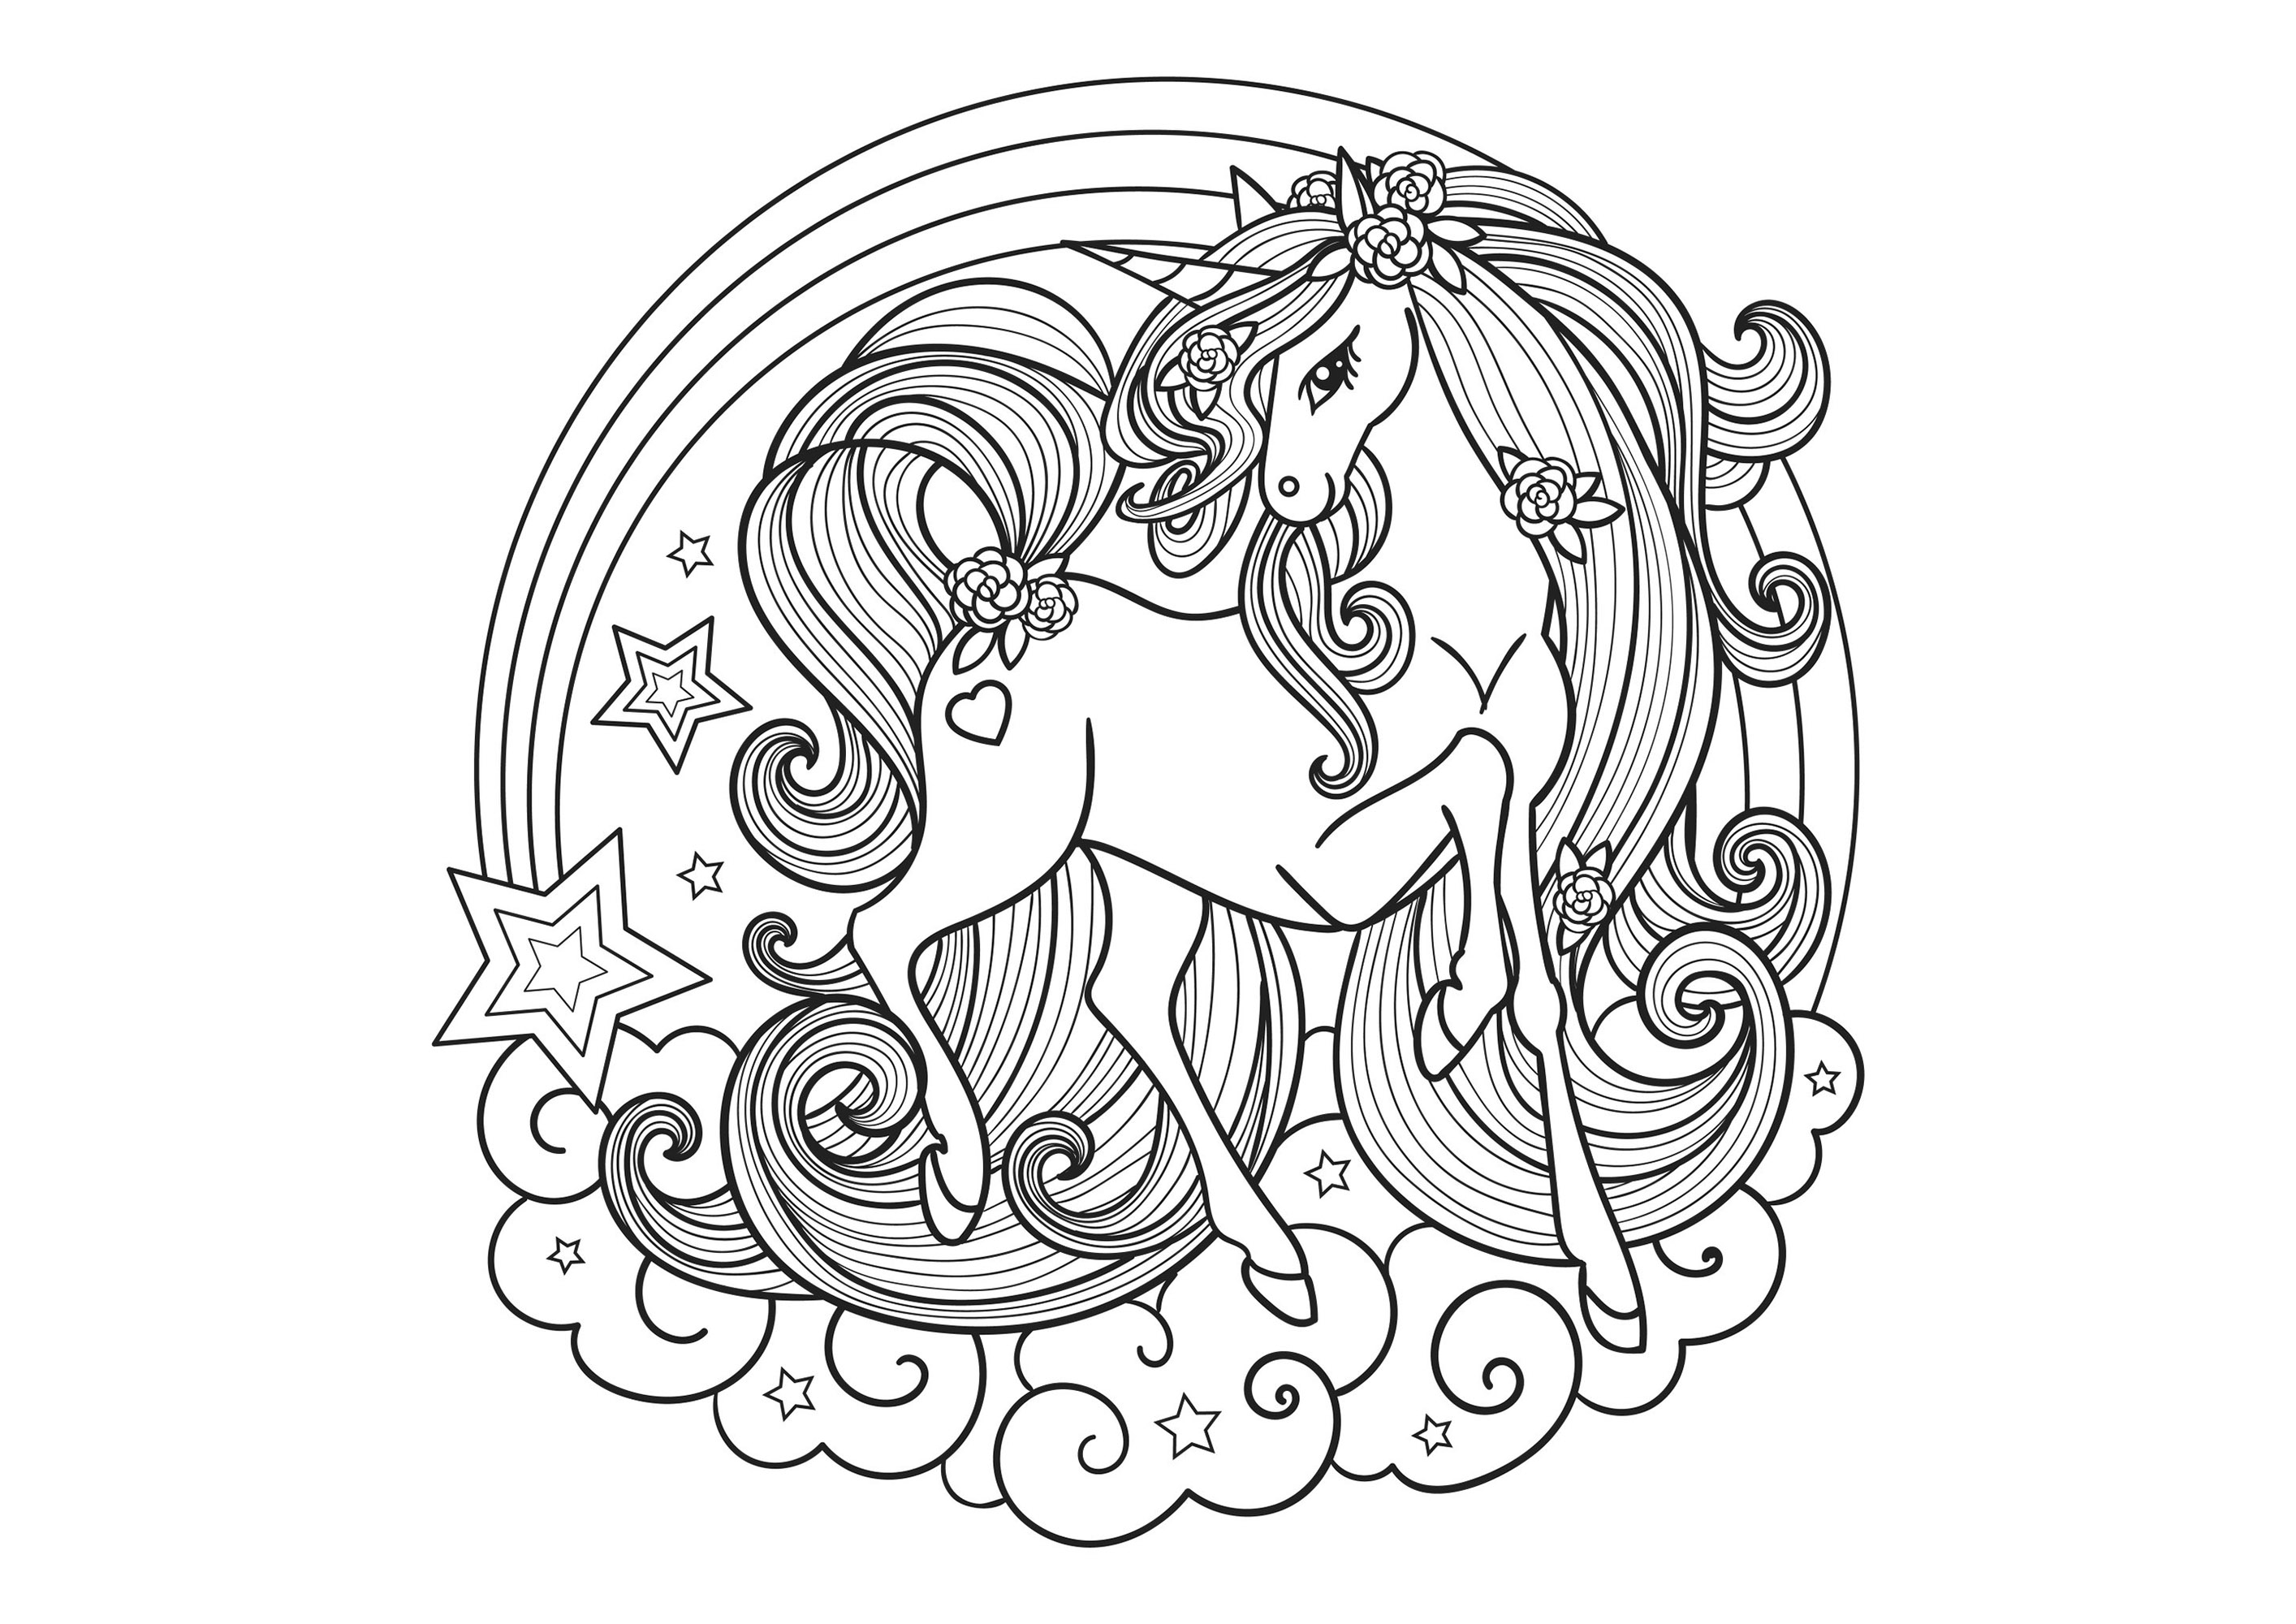 Precioso unicornio muy elegante, dentro de un mandala formado por nubes y una estrella fugaz.